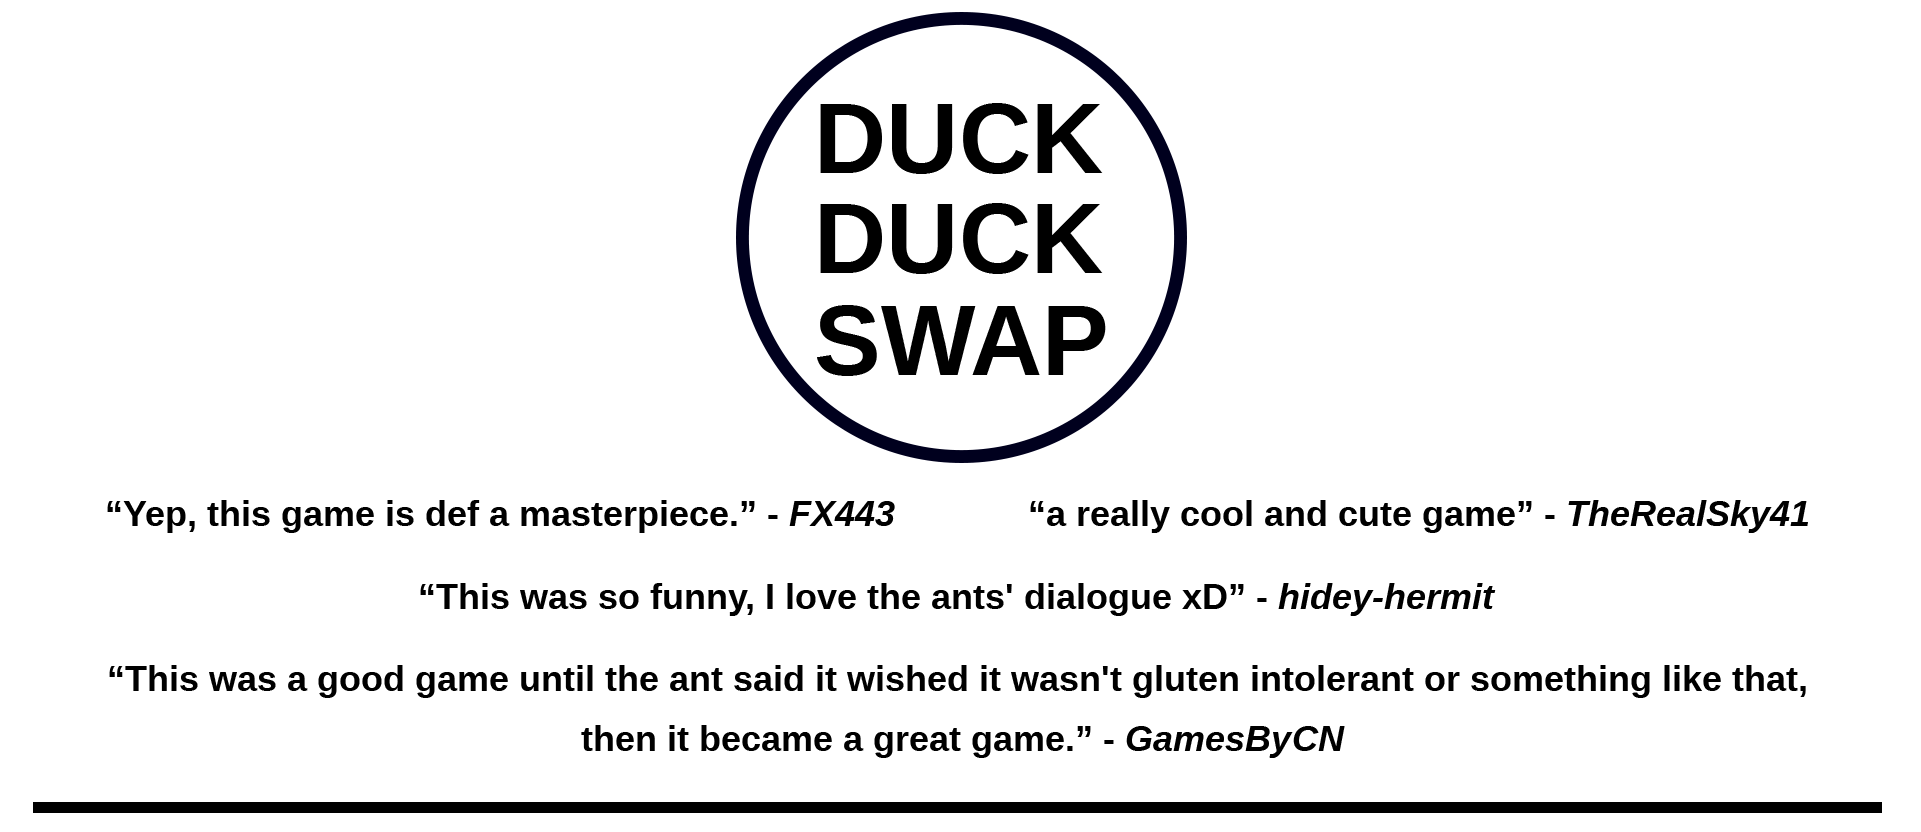 duck duck swap